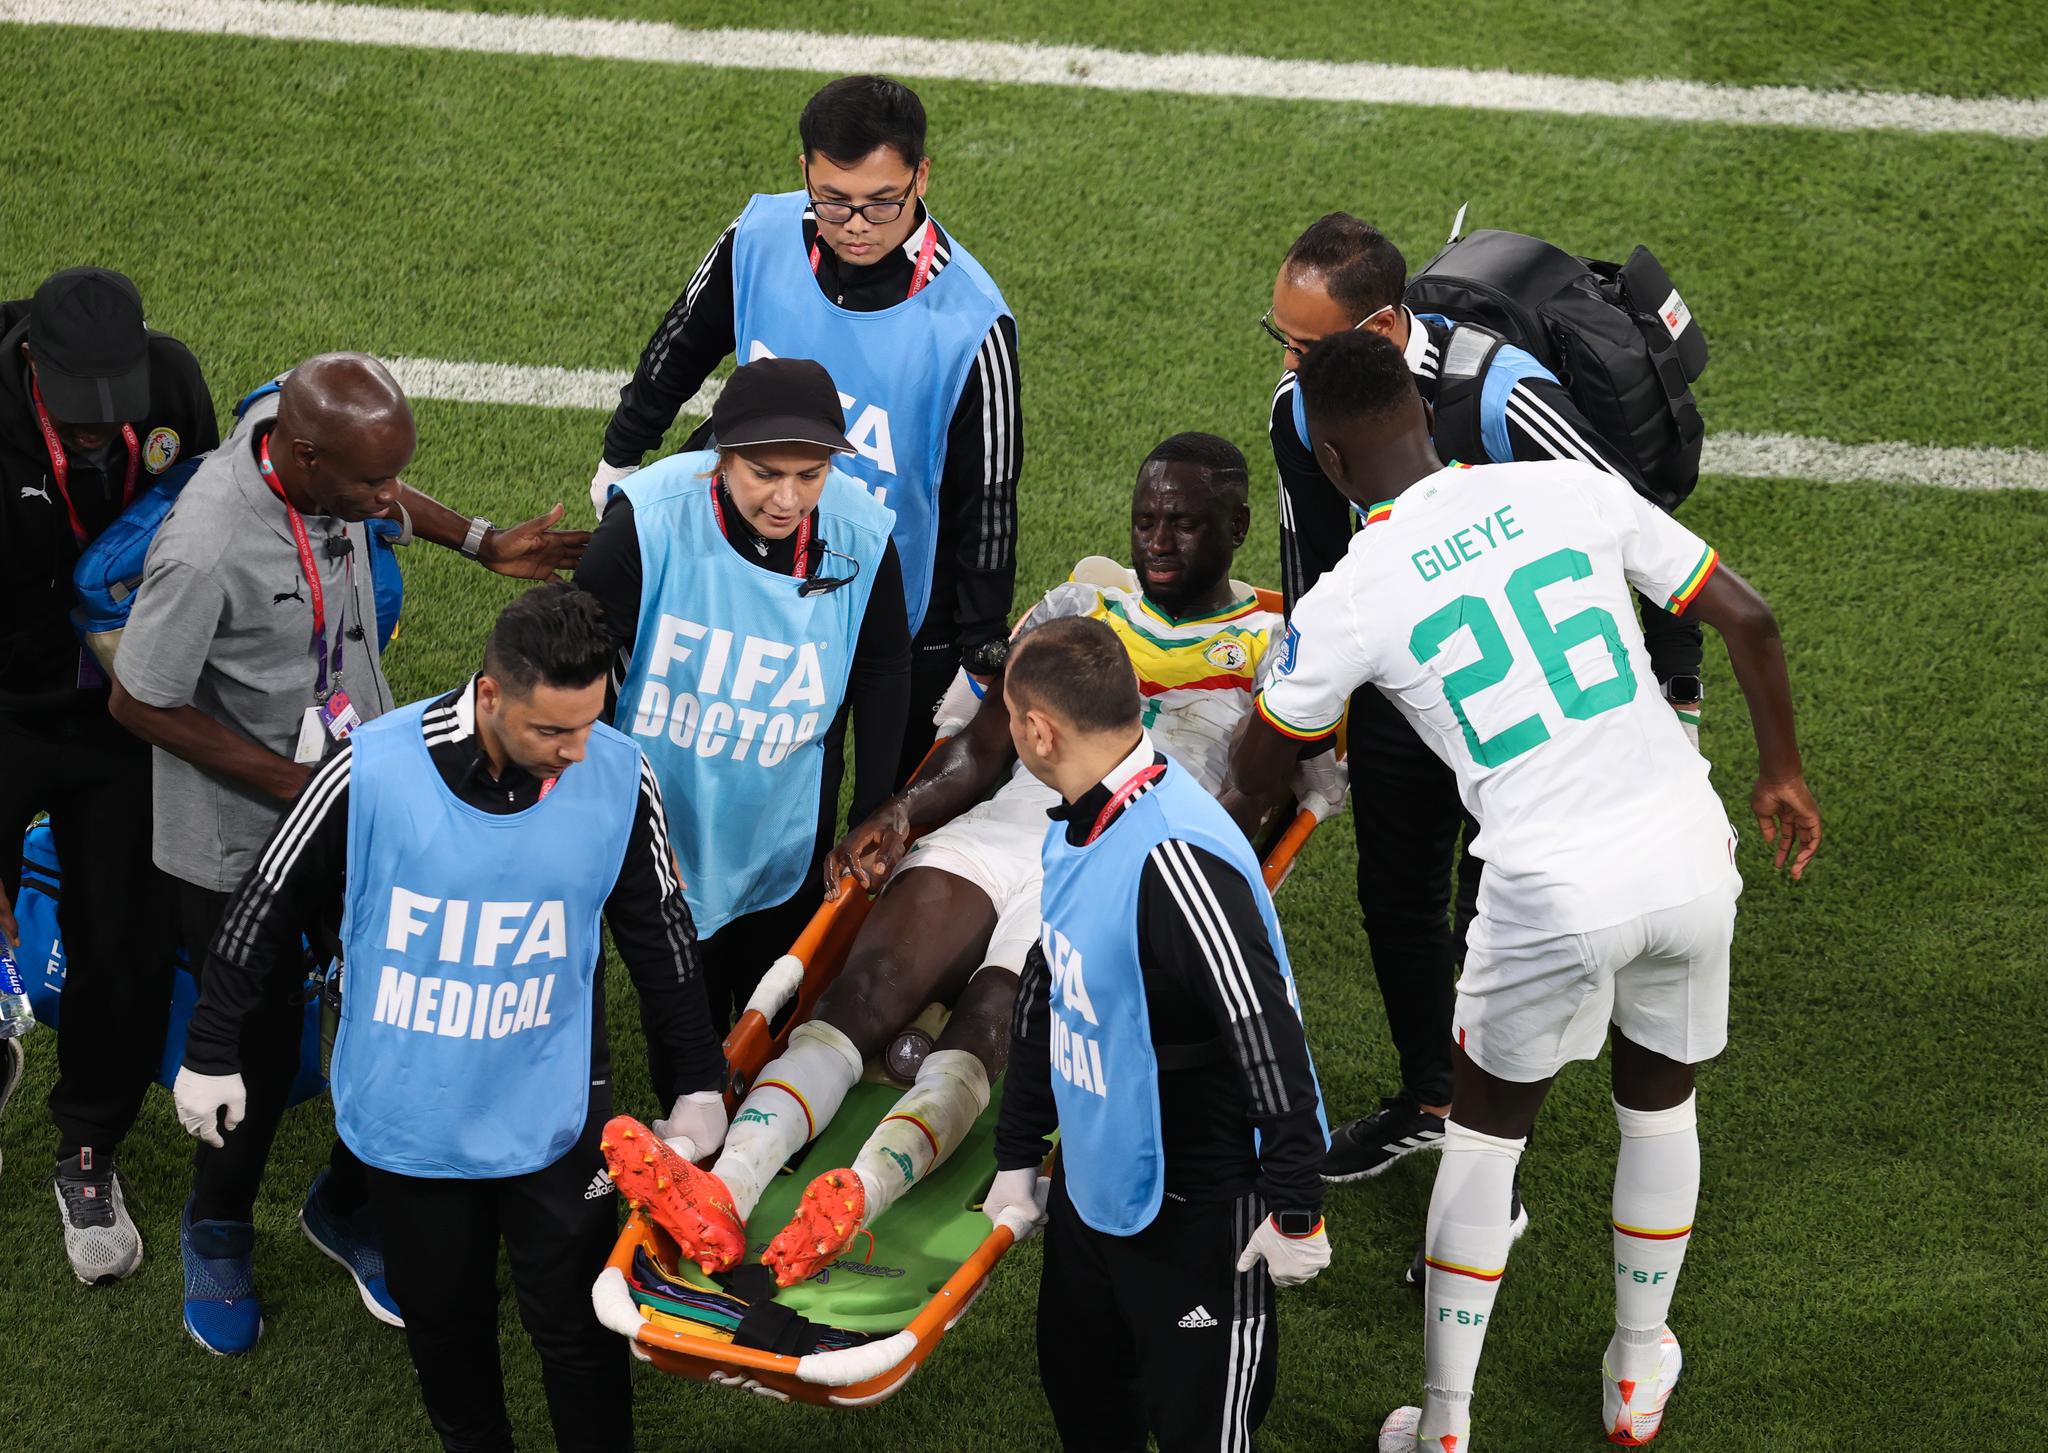 STORE SMERTER: Cheikhou Kouyate blir båret av banen underveis i oppgjøret mot Nederland mandag kveld. 